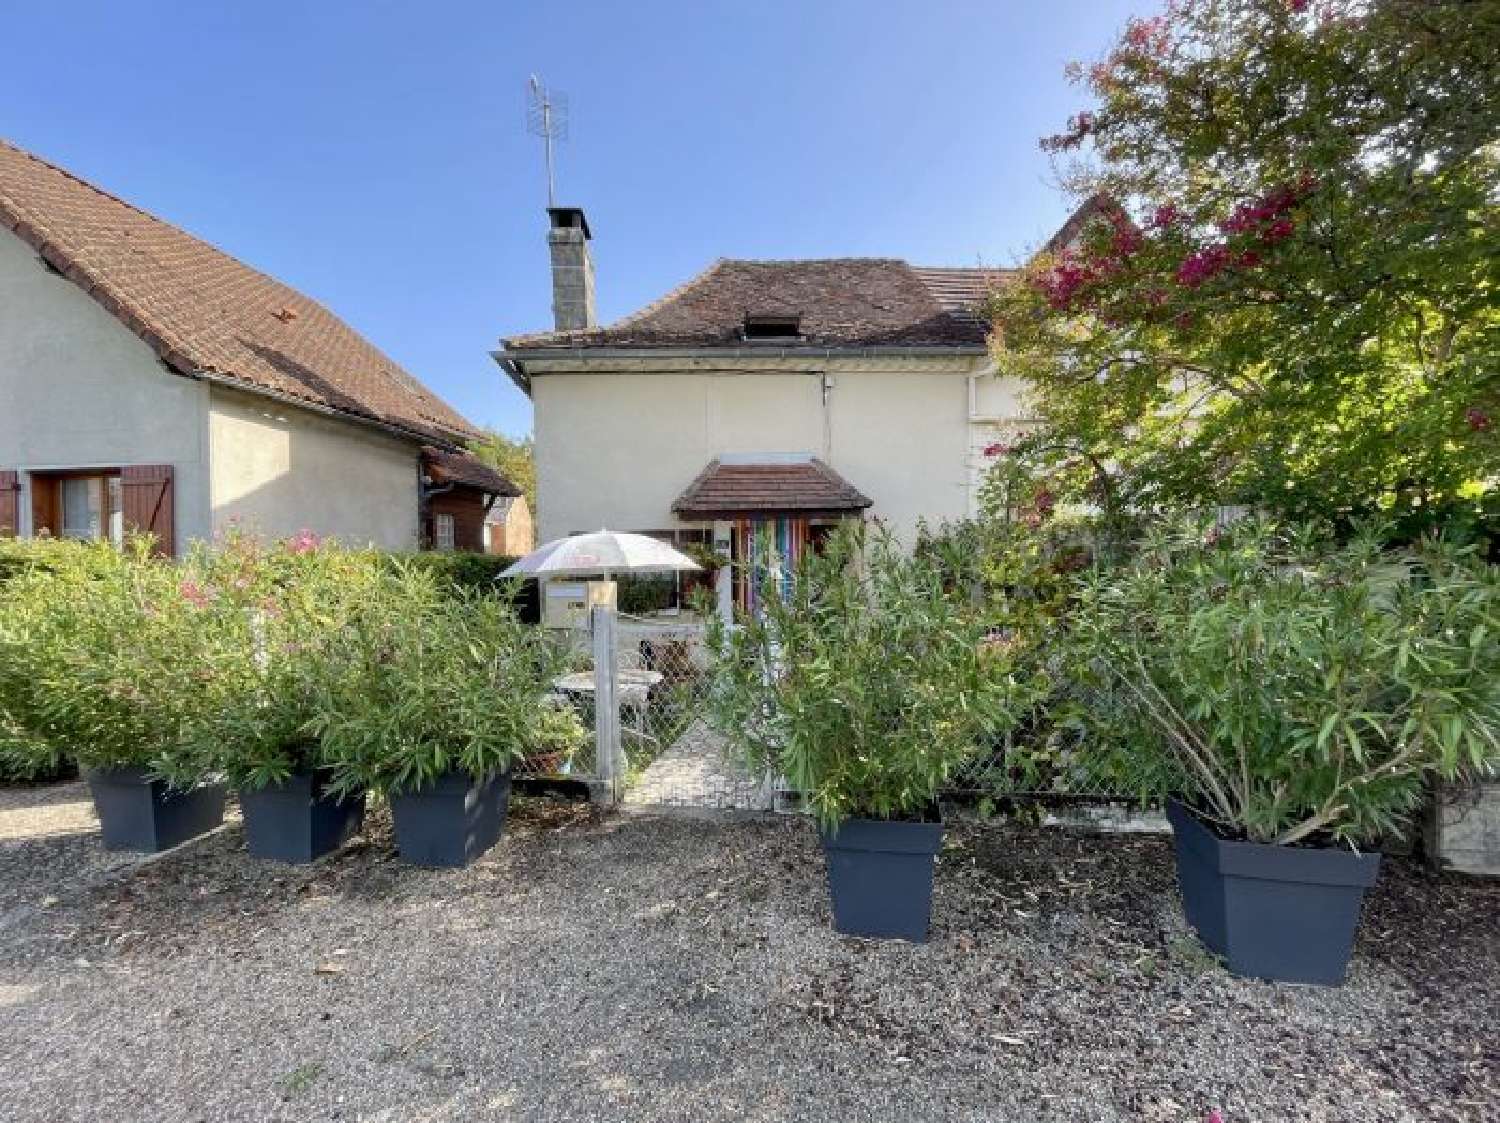  à vendre maison Corgnac-sur-l'Isle Dordogne 3